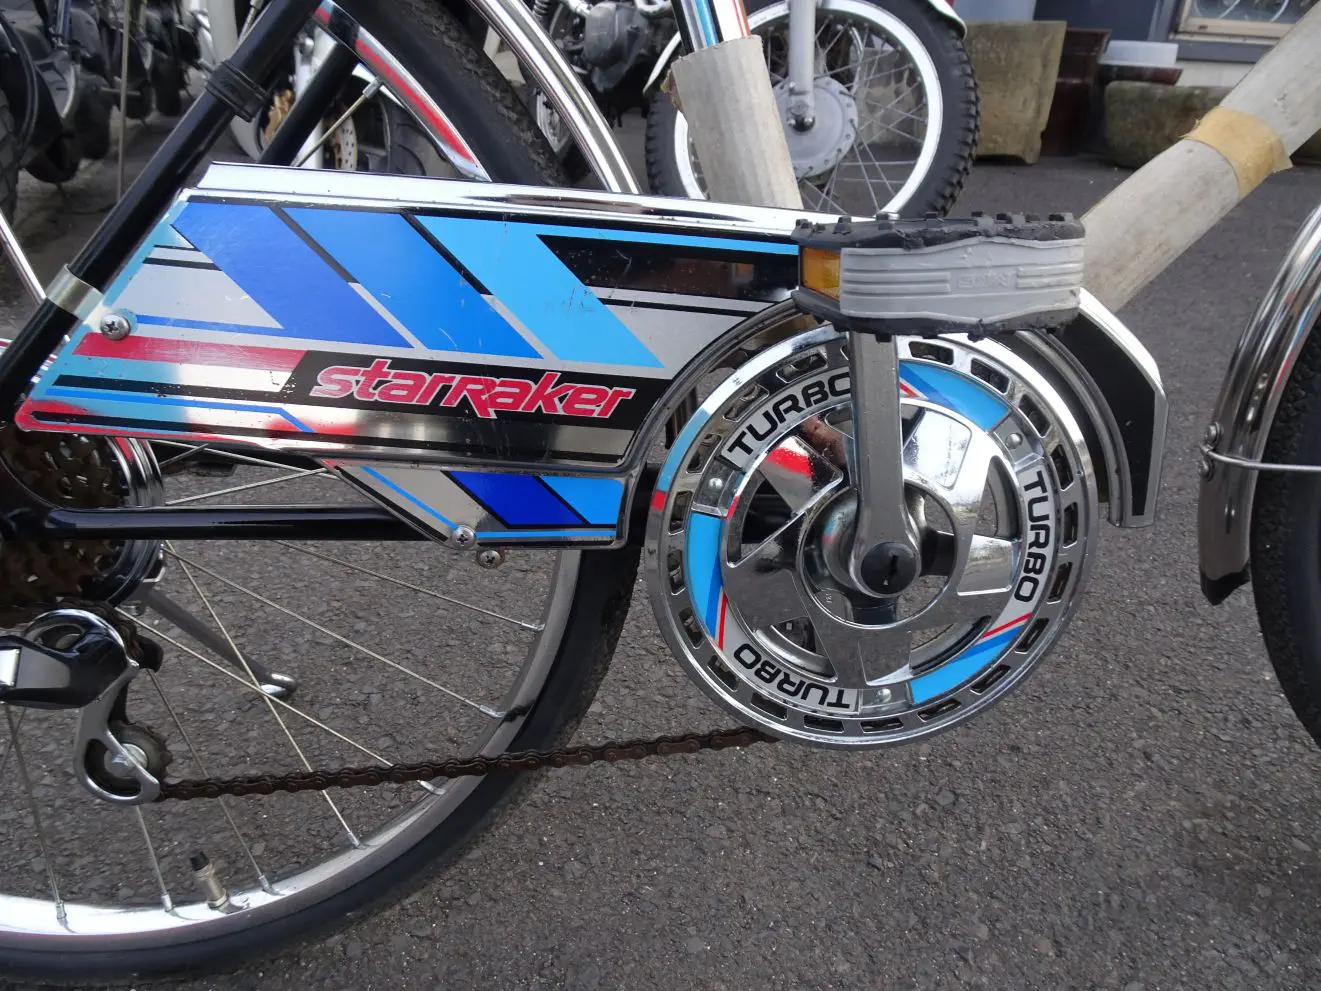 ミヤタ自転車 スターレイカー :: 自転車 | ベストオートの時代部屋